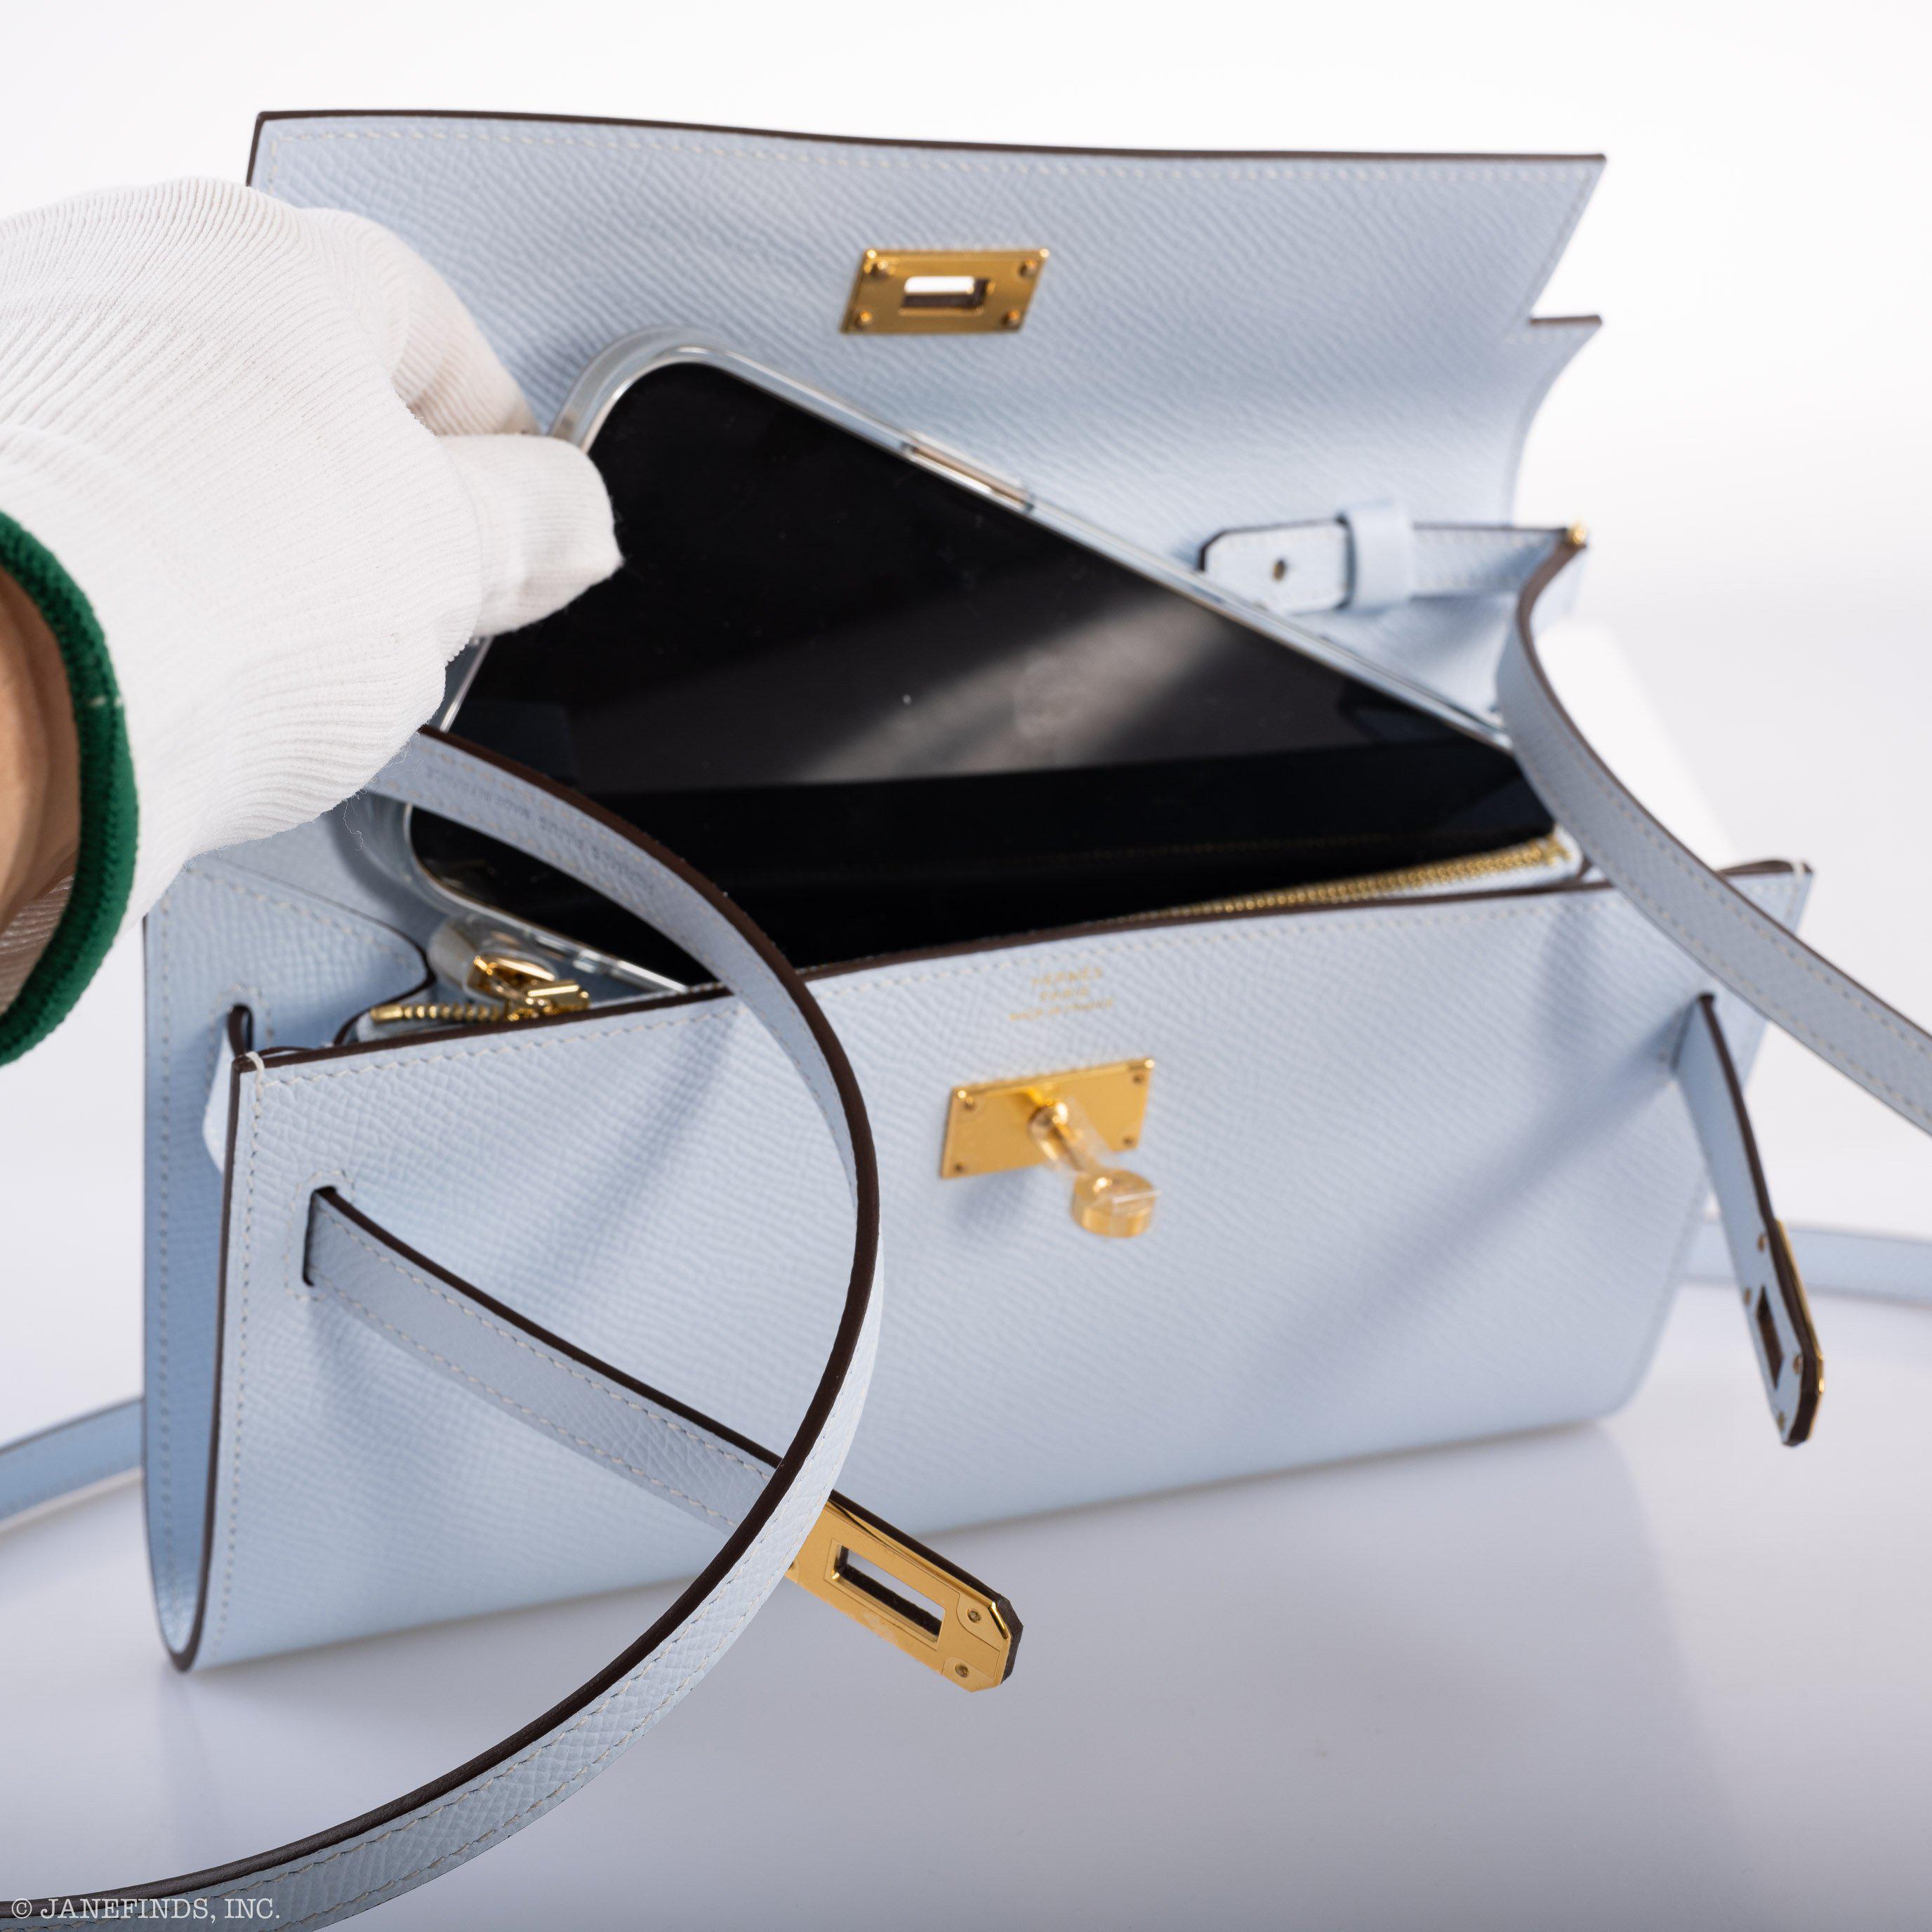 Hermès Kelly Wallet To Go Blue Brume Epsom Gold Hardware